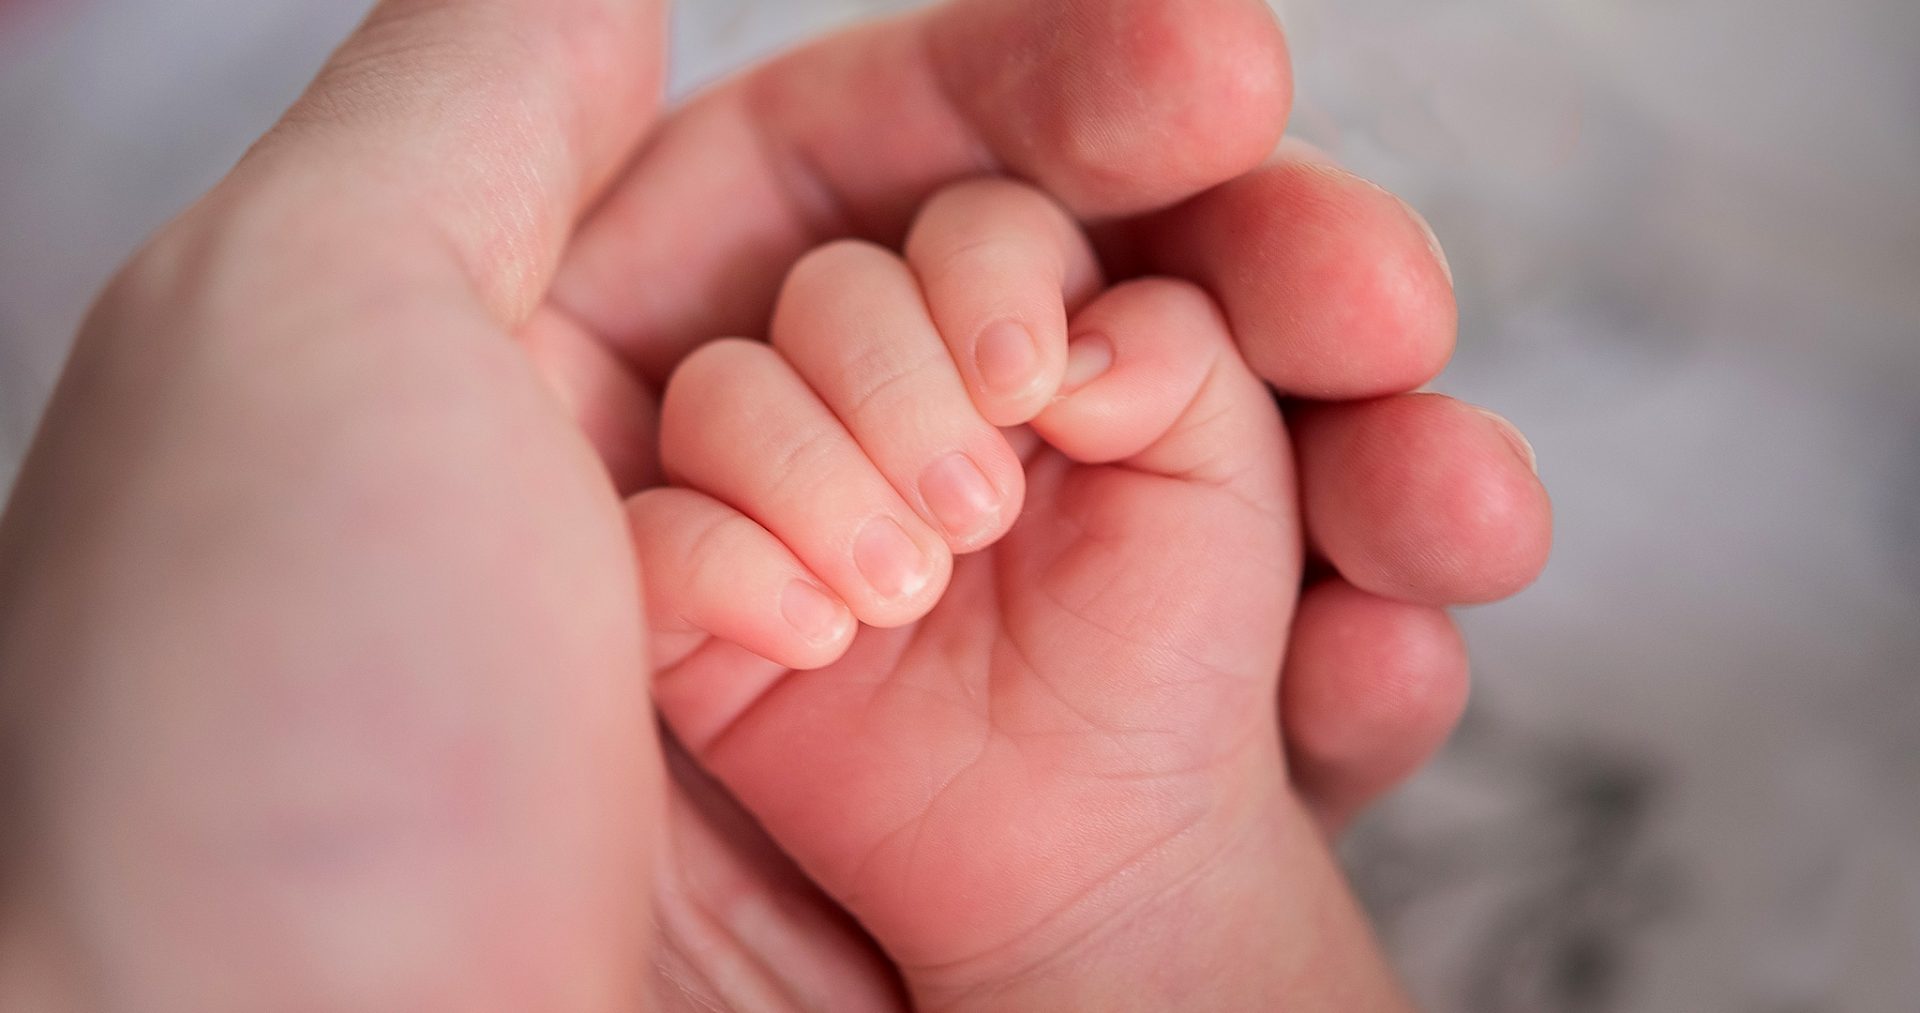 La natalità è ai minimi storici: mai così pochi neonati dall'Unità d'Italia